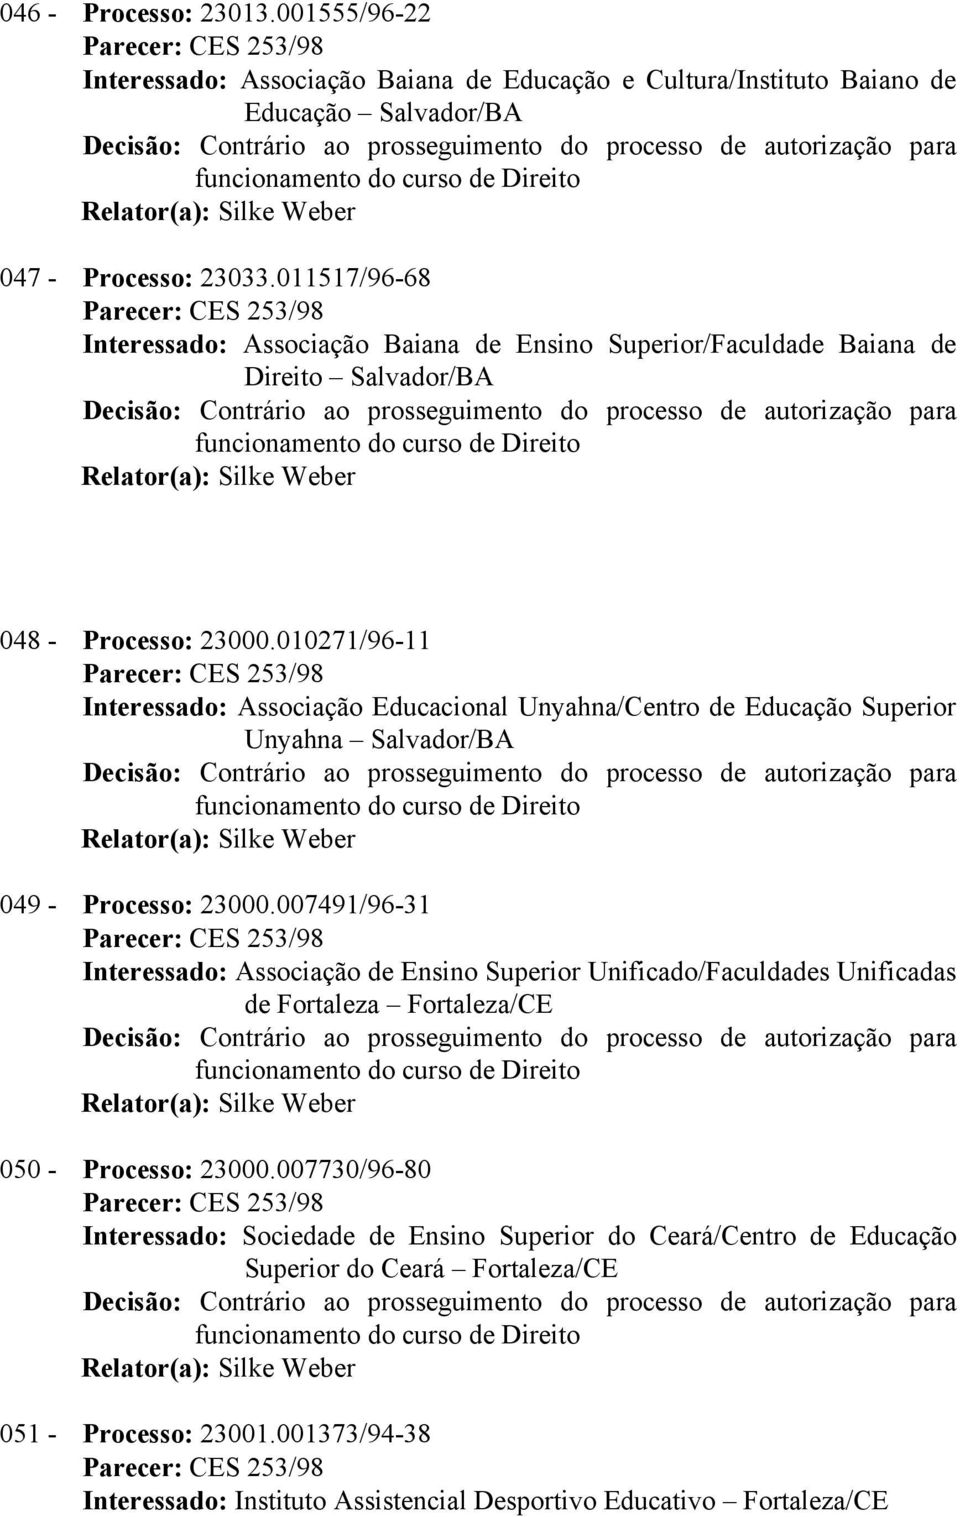 010271/96-11 Interessado: Associação Educacional Unyahna/Centro de Educação Superior Unyahna Salvador/BA 049 - Processo: 23000.